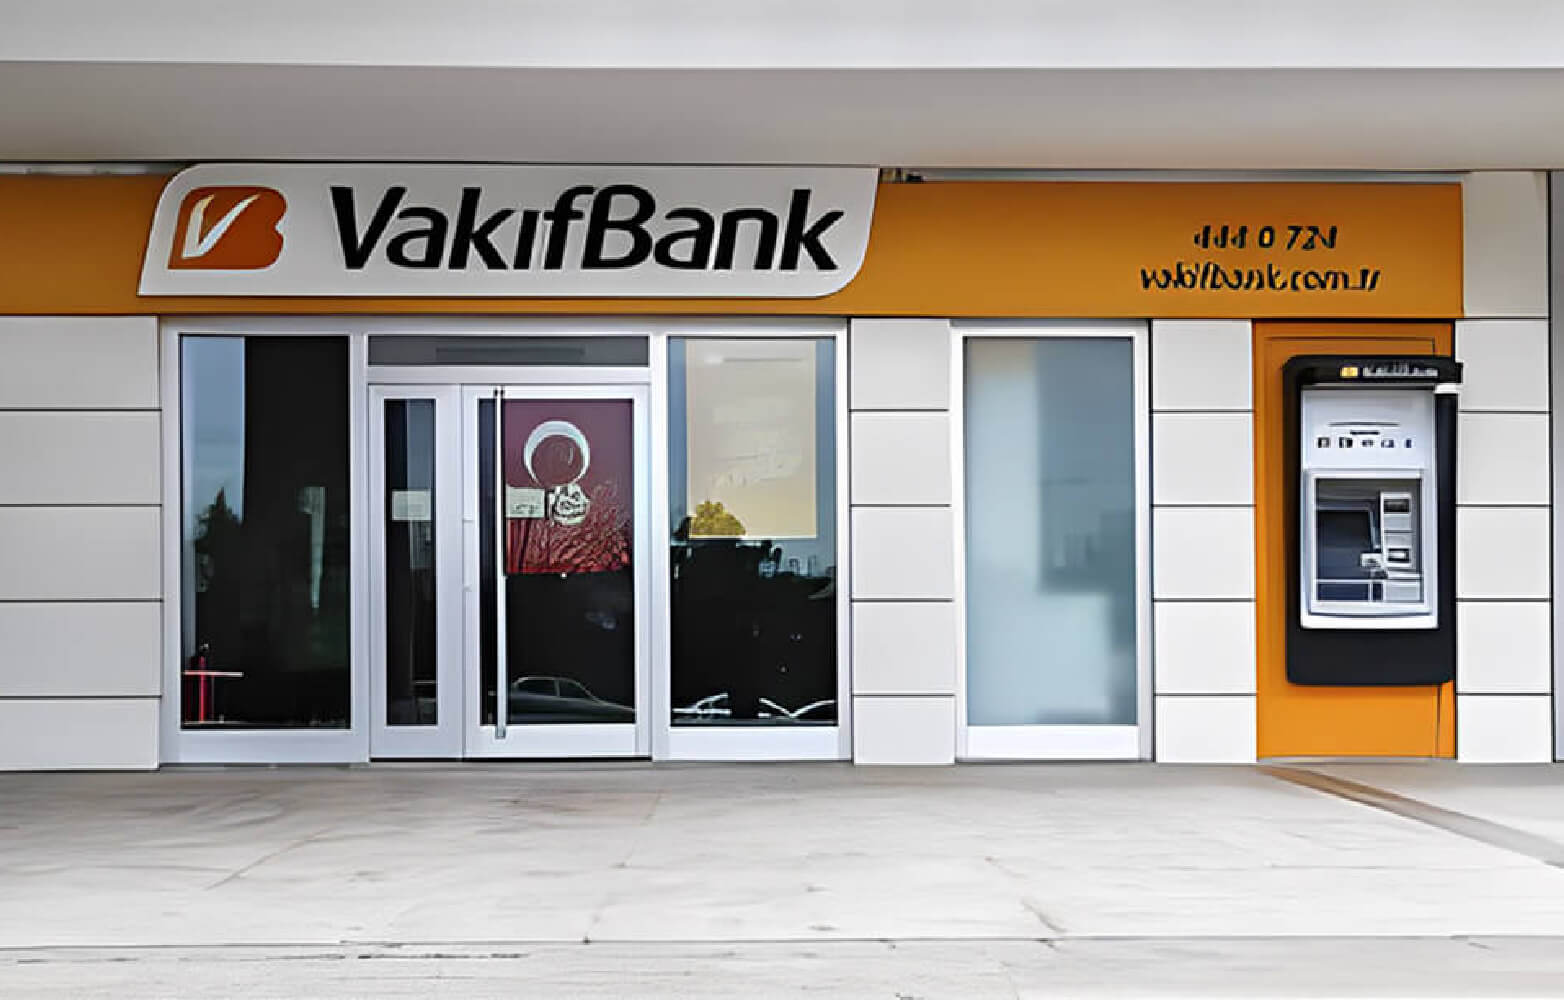 واکیف بانک: شعبه خیابان بغداد استانبول 